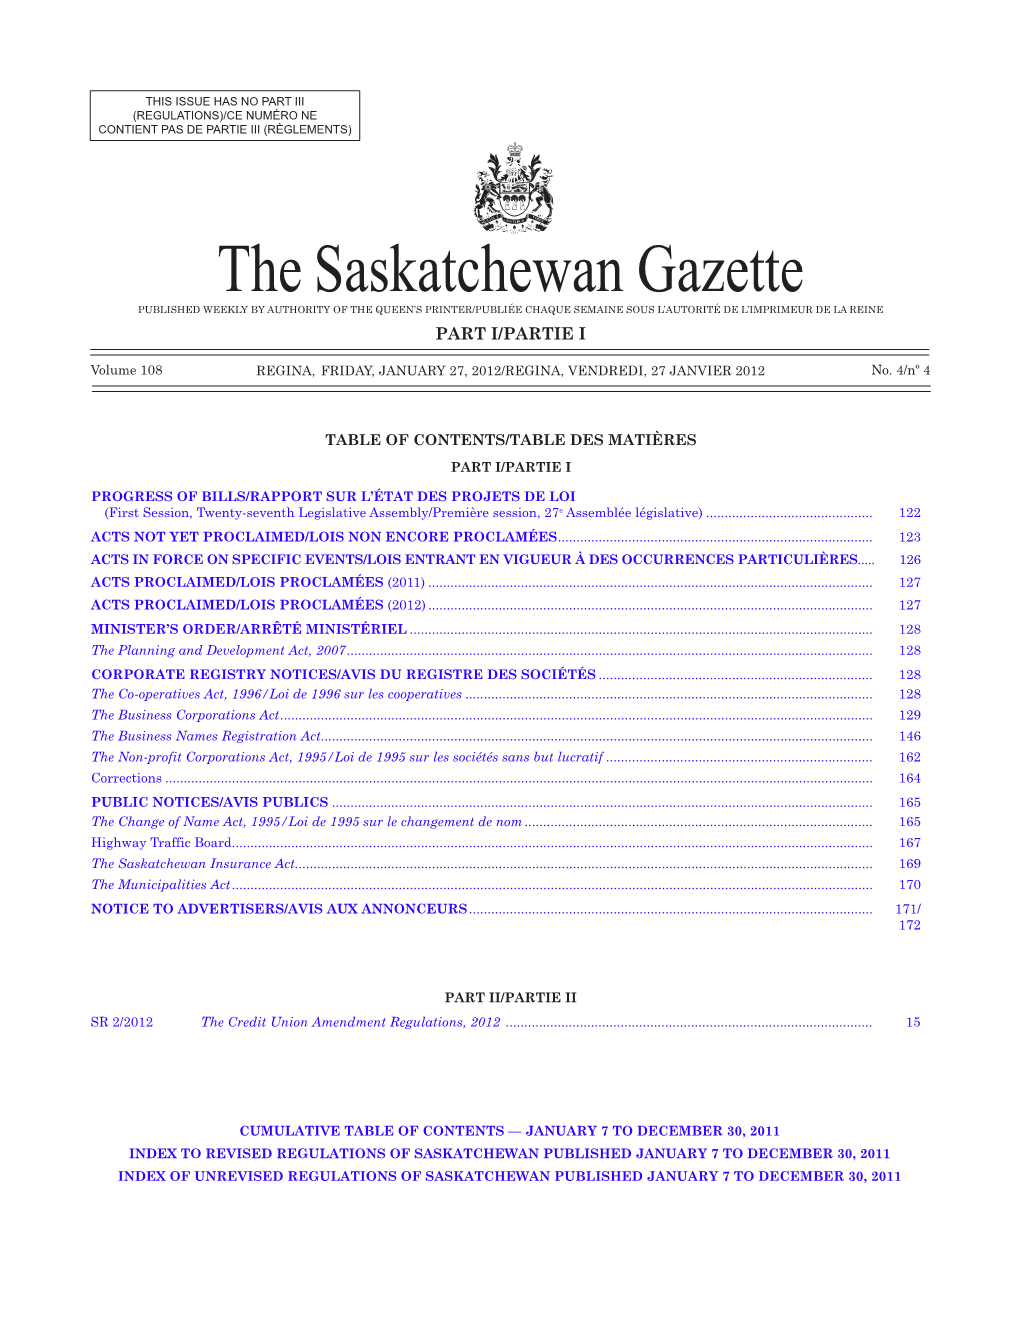 THE SASKATCHEWAN GAZETTE, January 27, 2012 121 (REGULATIONS)/CE NUMÉRO NE CONTIENT PAS DE PARTIE III (RÈGLEMENTS)